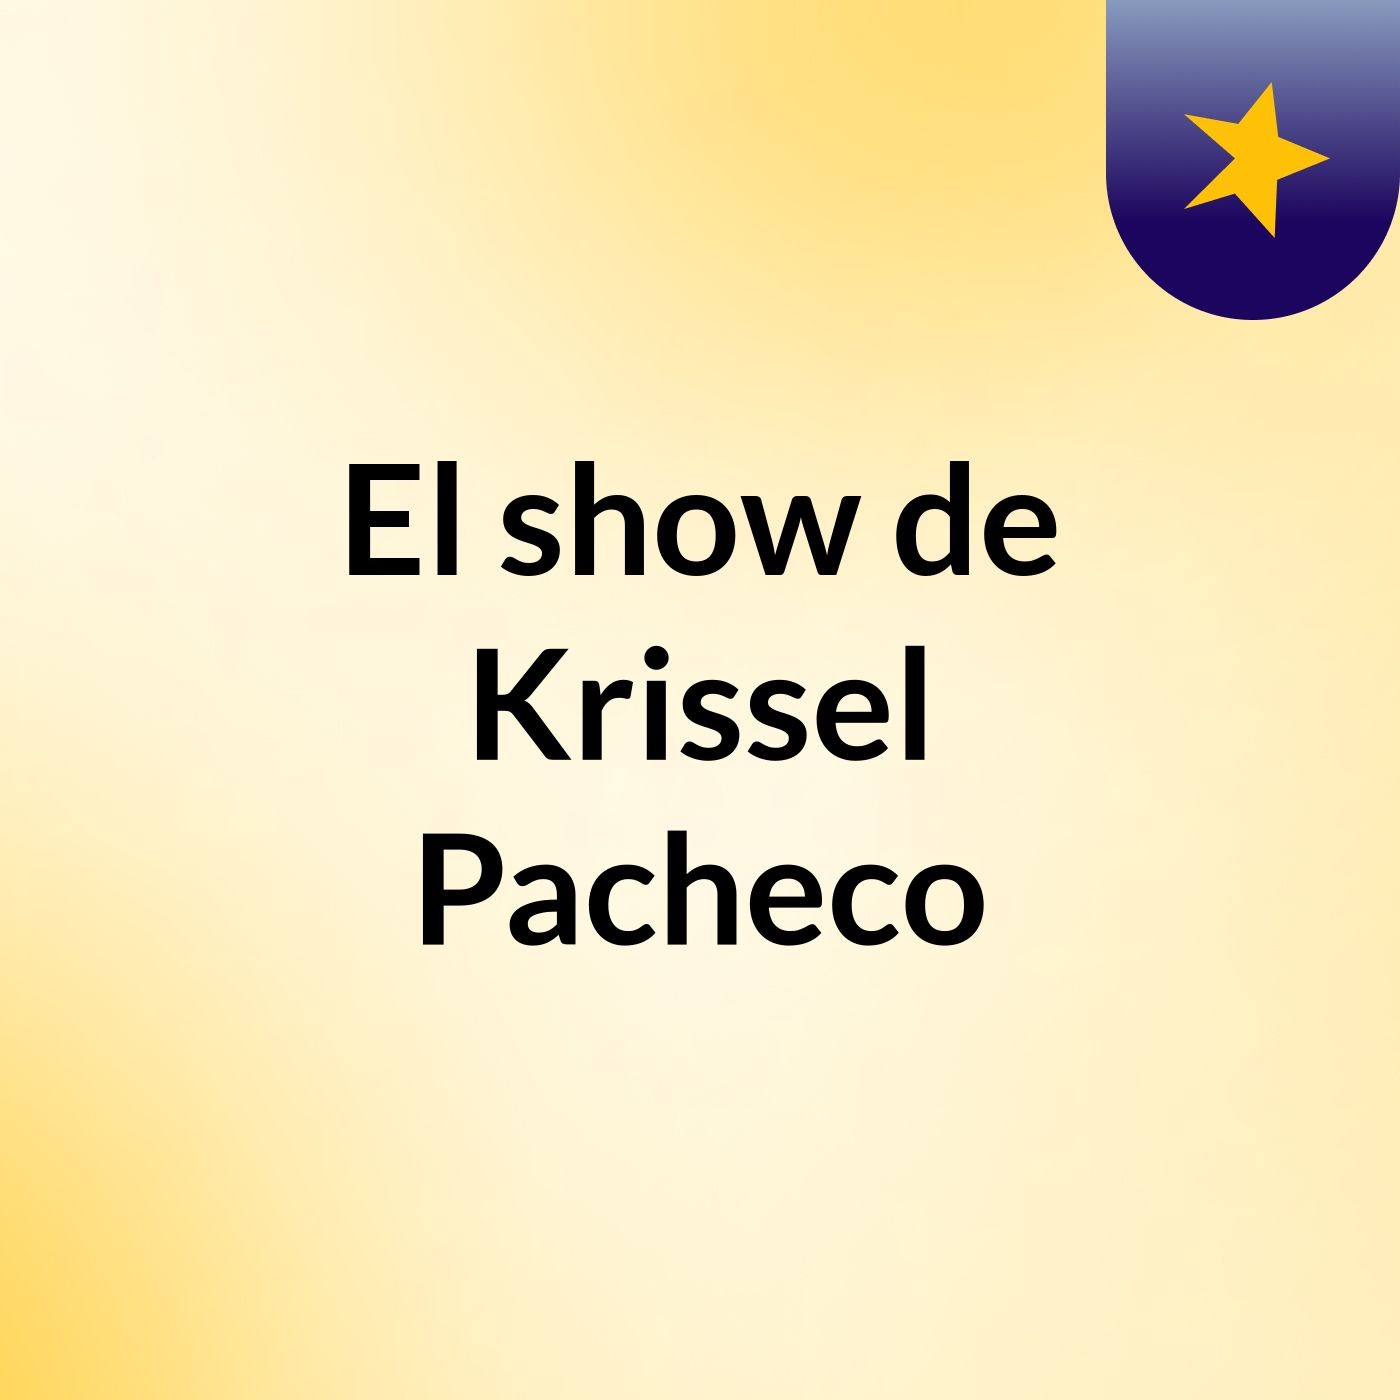 El show de Krissel Pacheco